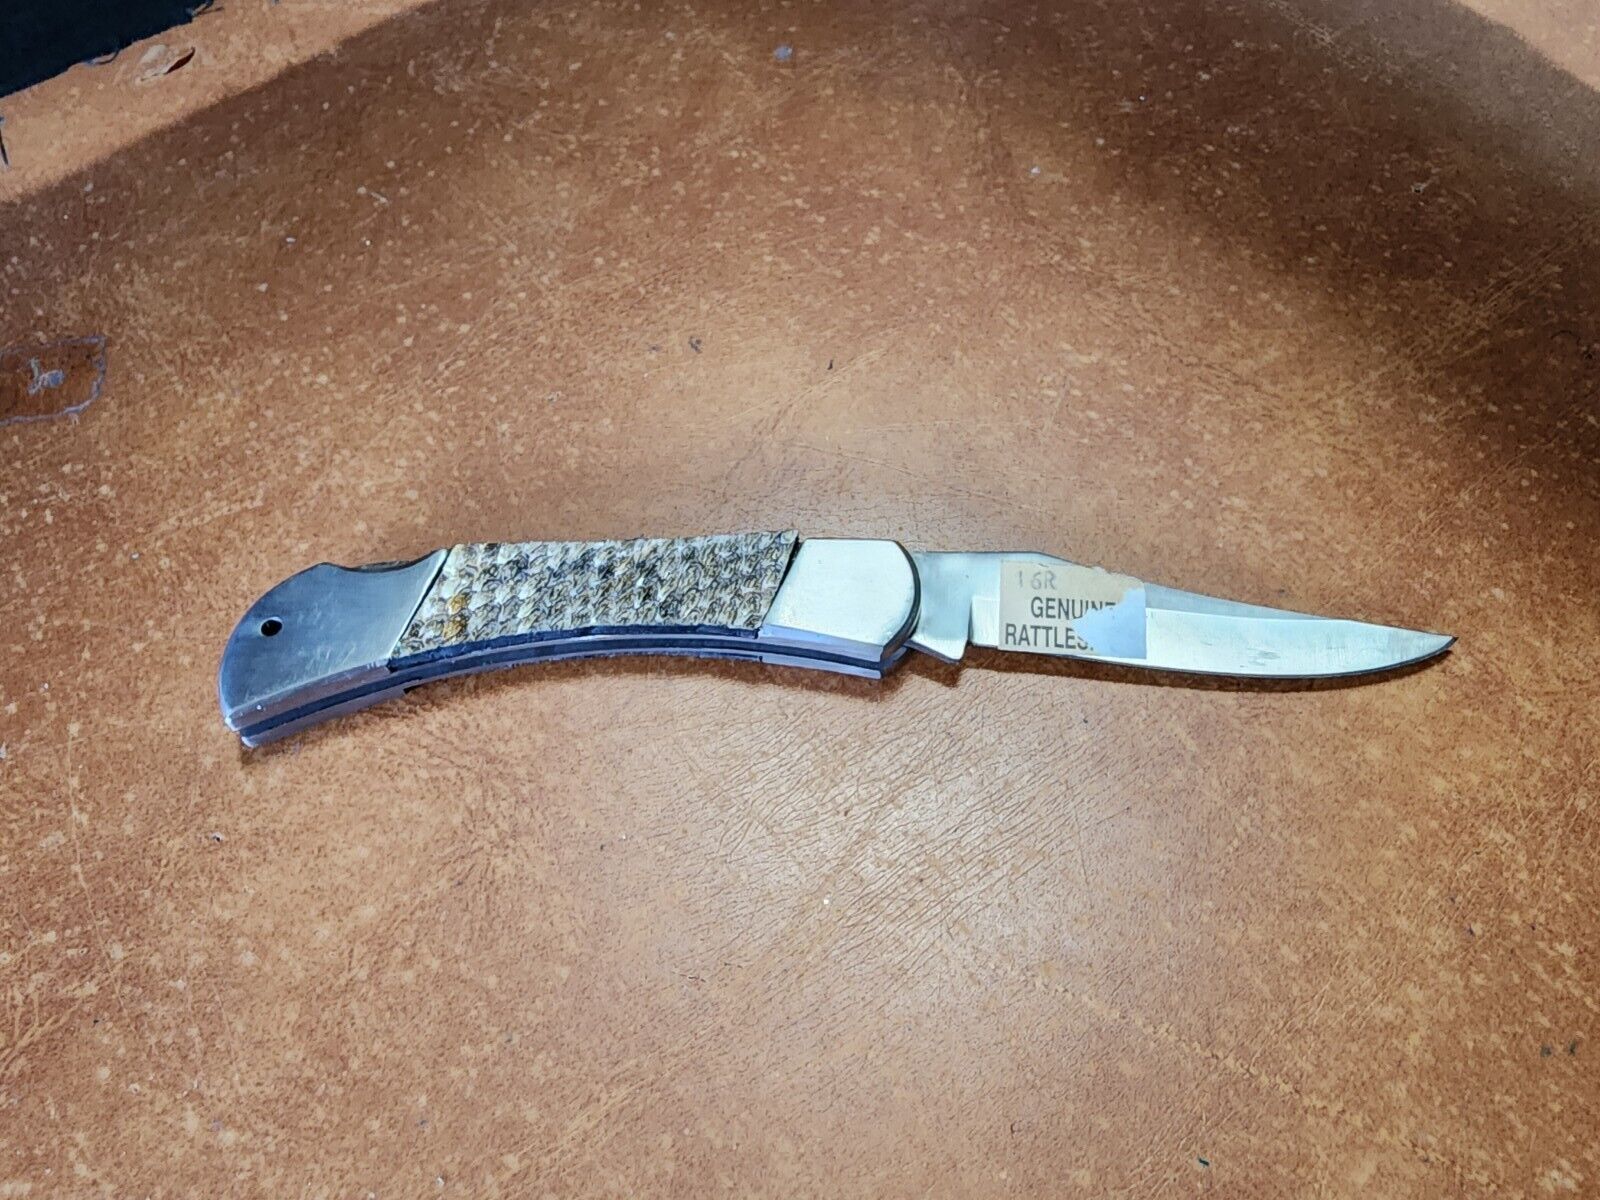 Vtg Solingen Steel Folding Pocket Knife W/ Genuine Rattlesnake Scales Handle 